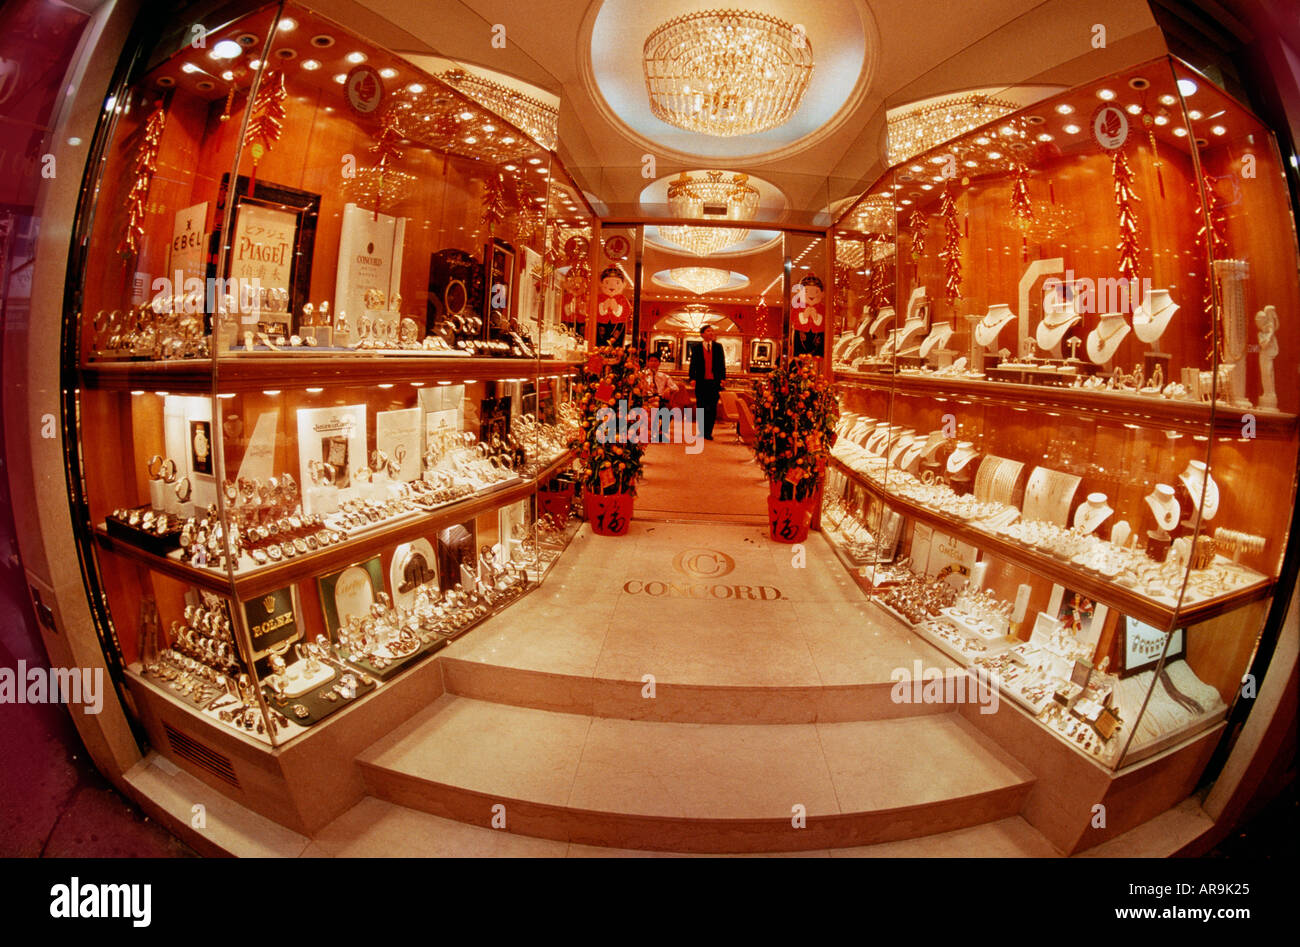 Hong Kong gioiellerie finestra anteriore ingresso orologi shopping collane anelli oro argento Concord gioielli ricchi di uscita posh Foto Stock